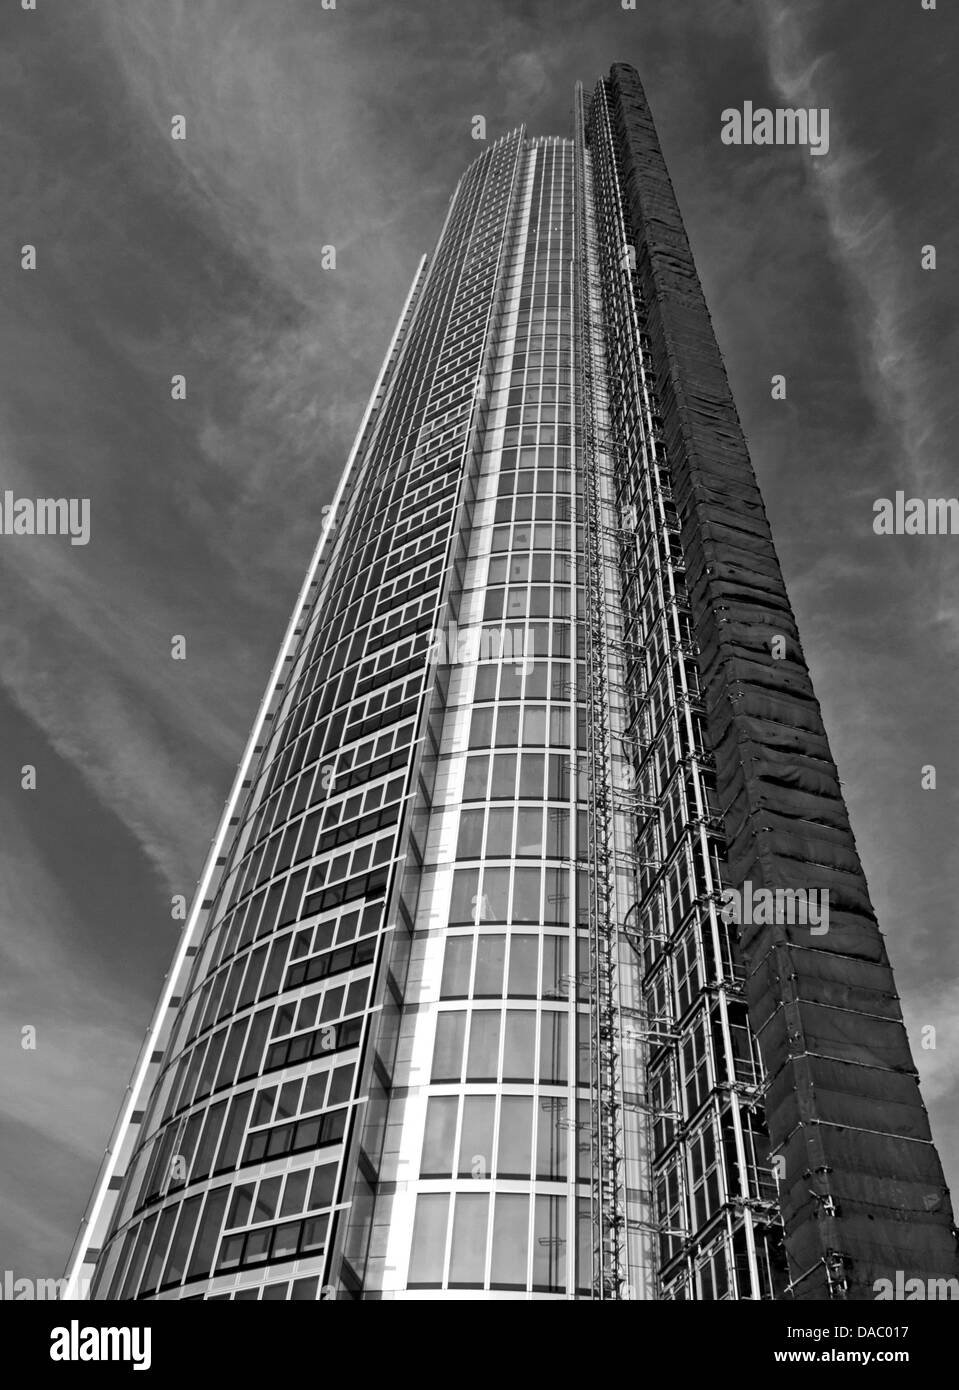 Vista della Torre di Vauxhall (St George Wharf Tower), il più alto il solo edificio residenziale nel Regno Unito, il secondo più alto in Europa Foto Stock